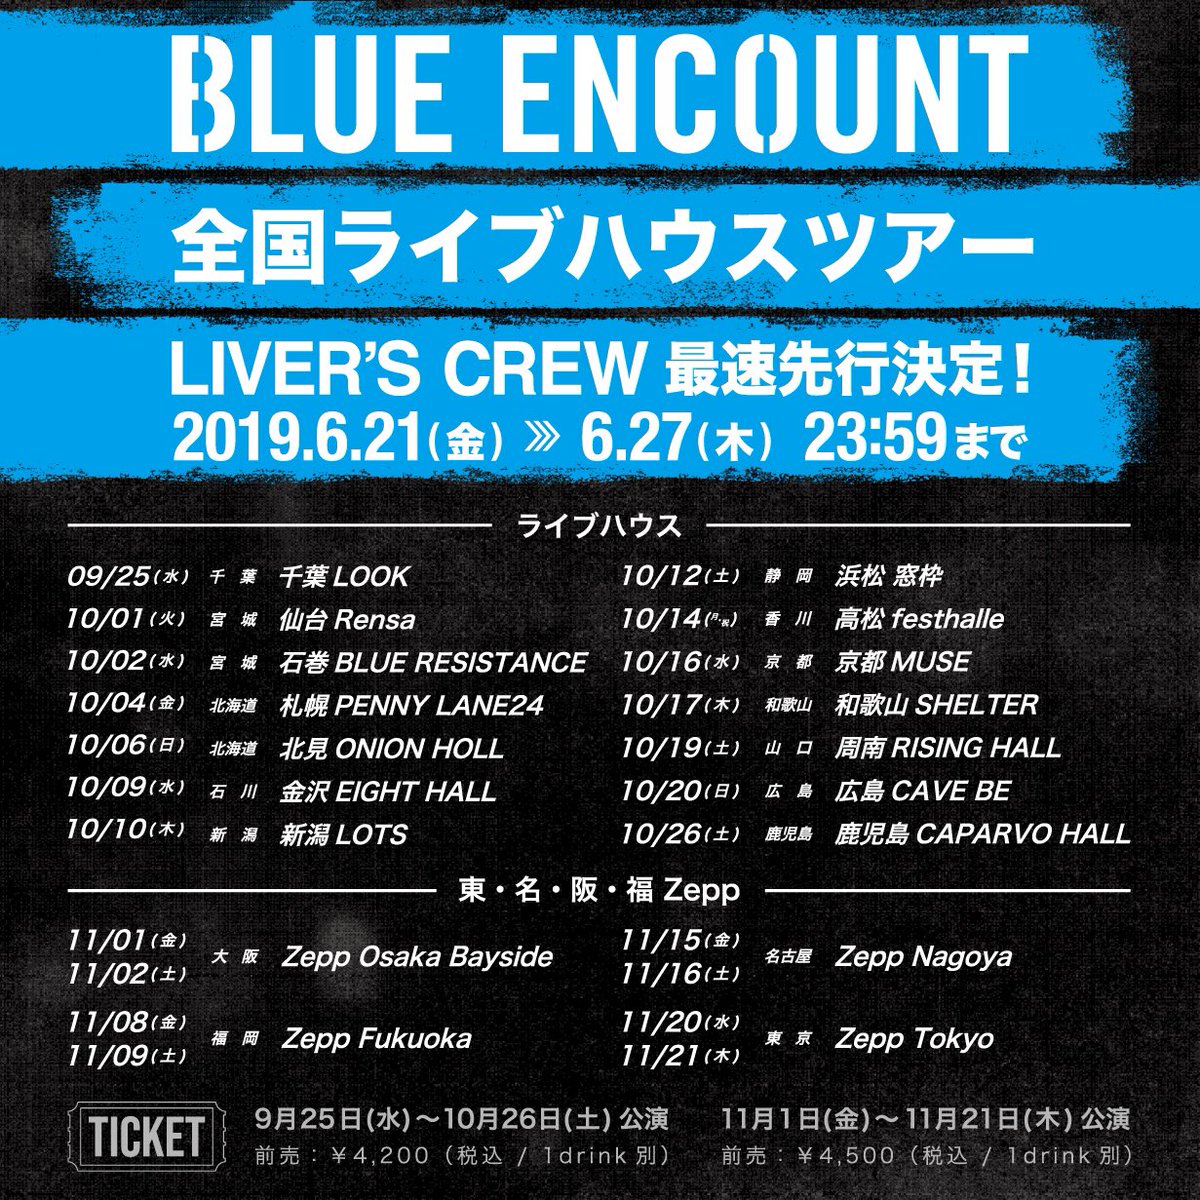 Blue Encount على تويتر 重大発表 7 13 スタート 日本テレビ系土曜ドラマ ボイス 110緊急指令室 主題歌決定 ドラマ主題歌 ブルエン 新曲 バッドパラドックス 9 11 リリース決定 秋のライブハウスツアー決定 Liver S Crew最速先行受付中